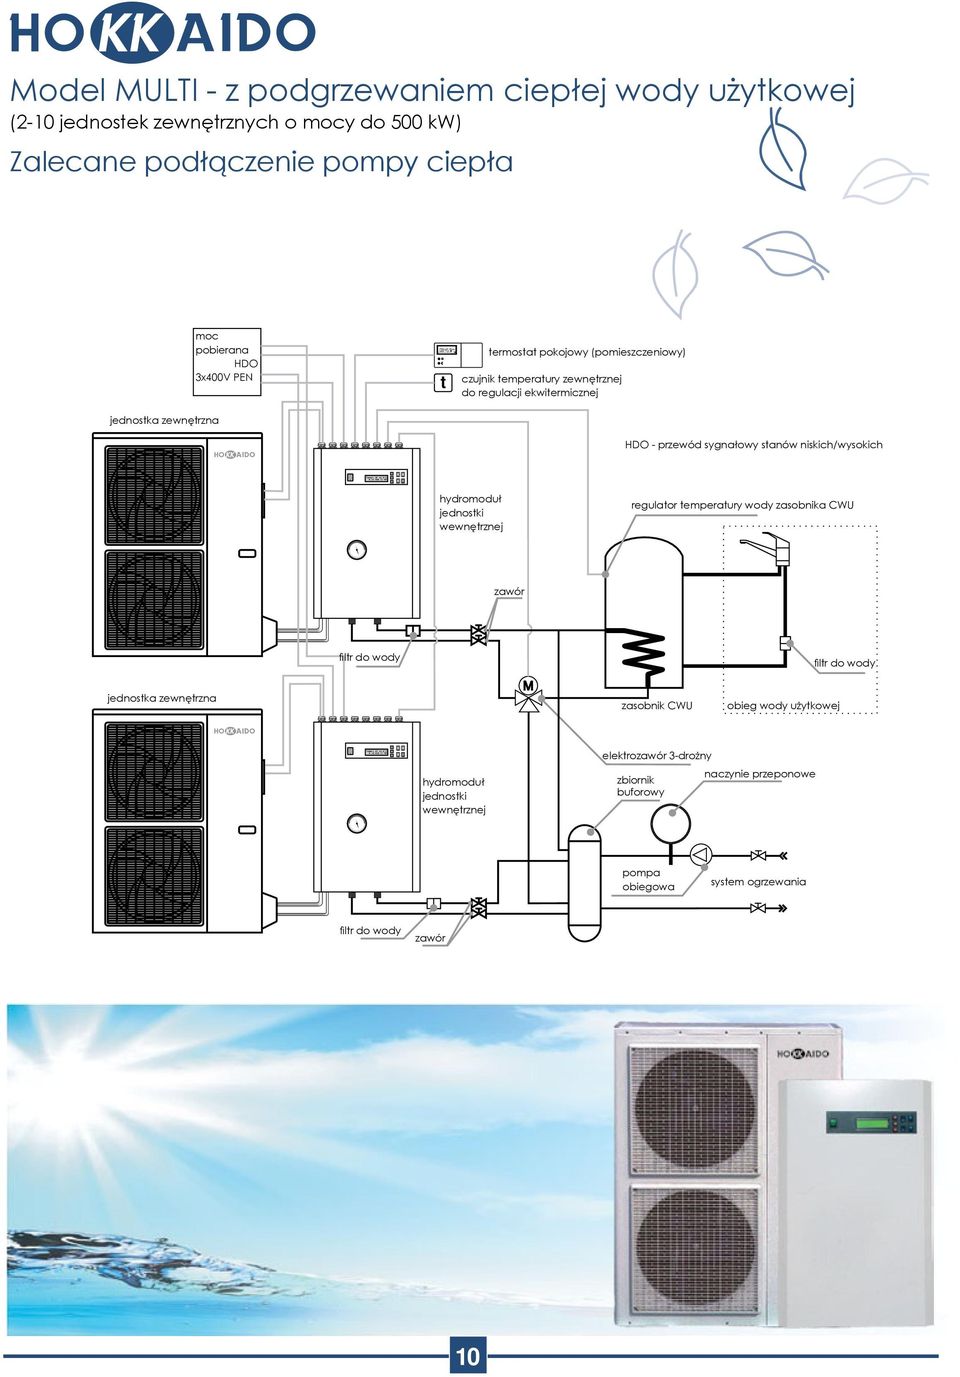 niskich/wysokich hydromoduł jednostki wewnętrznej regulator temperatury wody zasobnika CWU zawór filtr do wody filtr do wody jednostka zewnętrzna zasobnik CWU